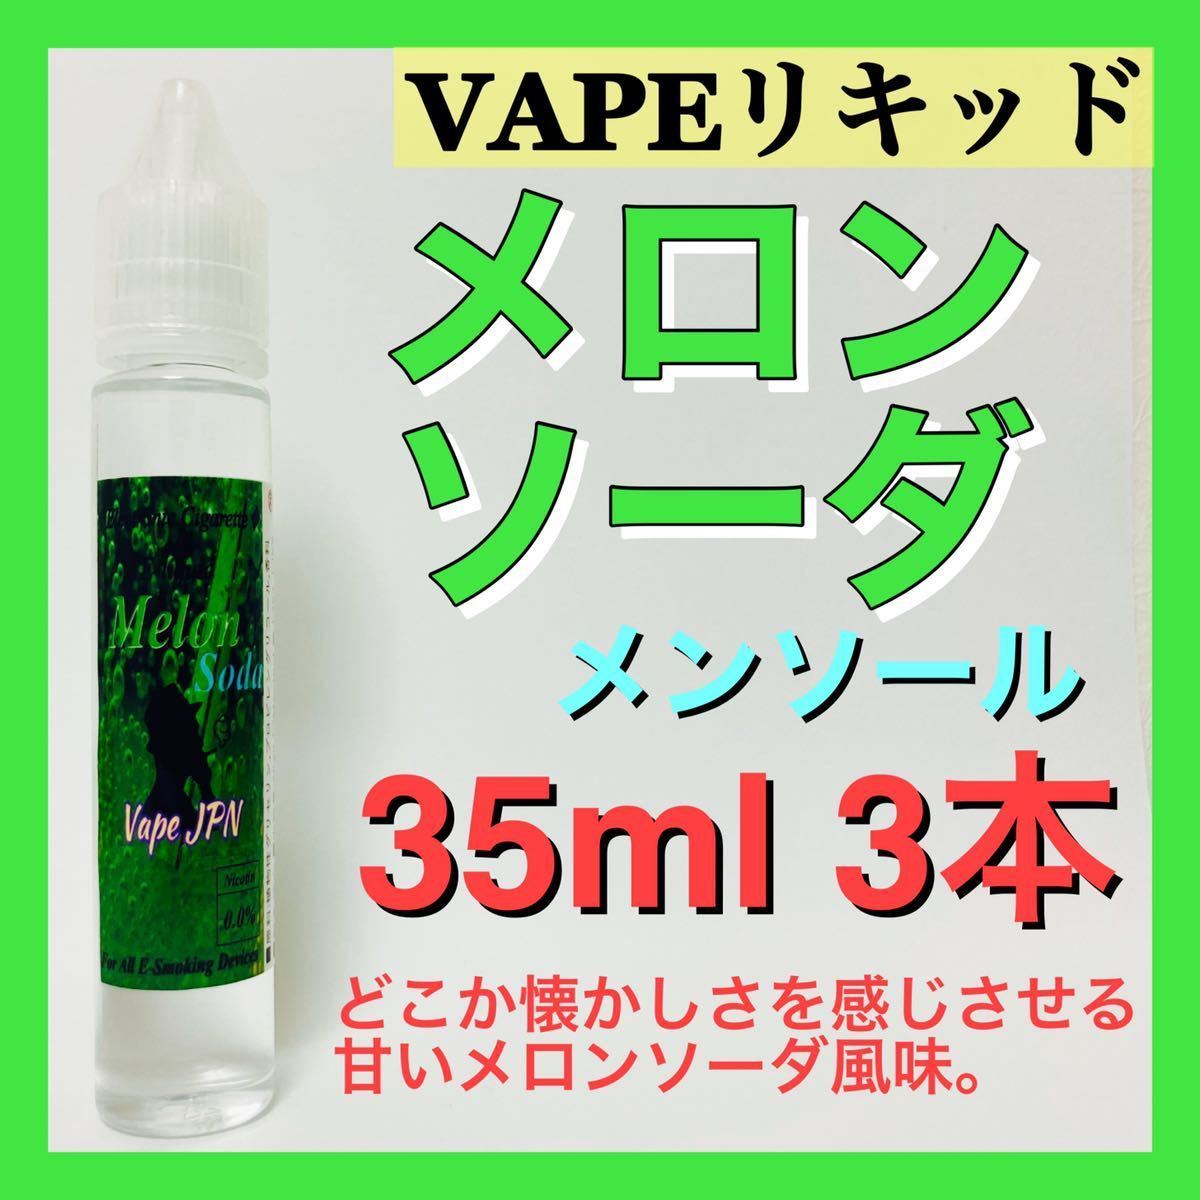 全国総量無料で リクロ VAPE 電子タバコ 日本国産 特濃メンソールオレンジリキッド 33ml